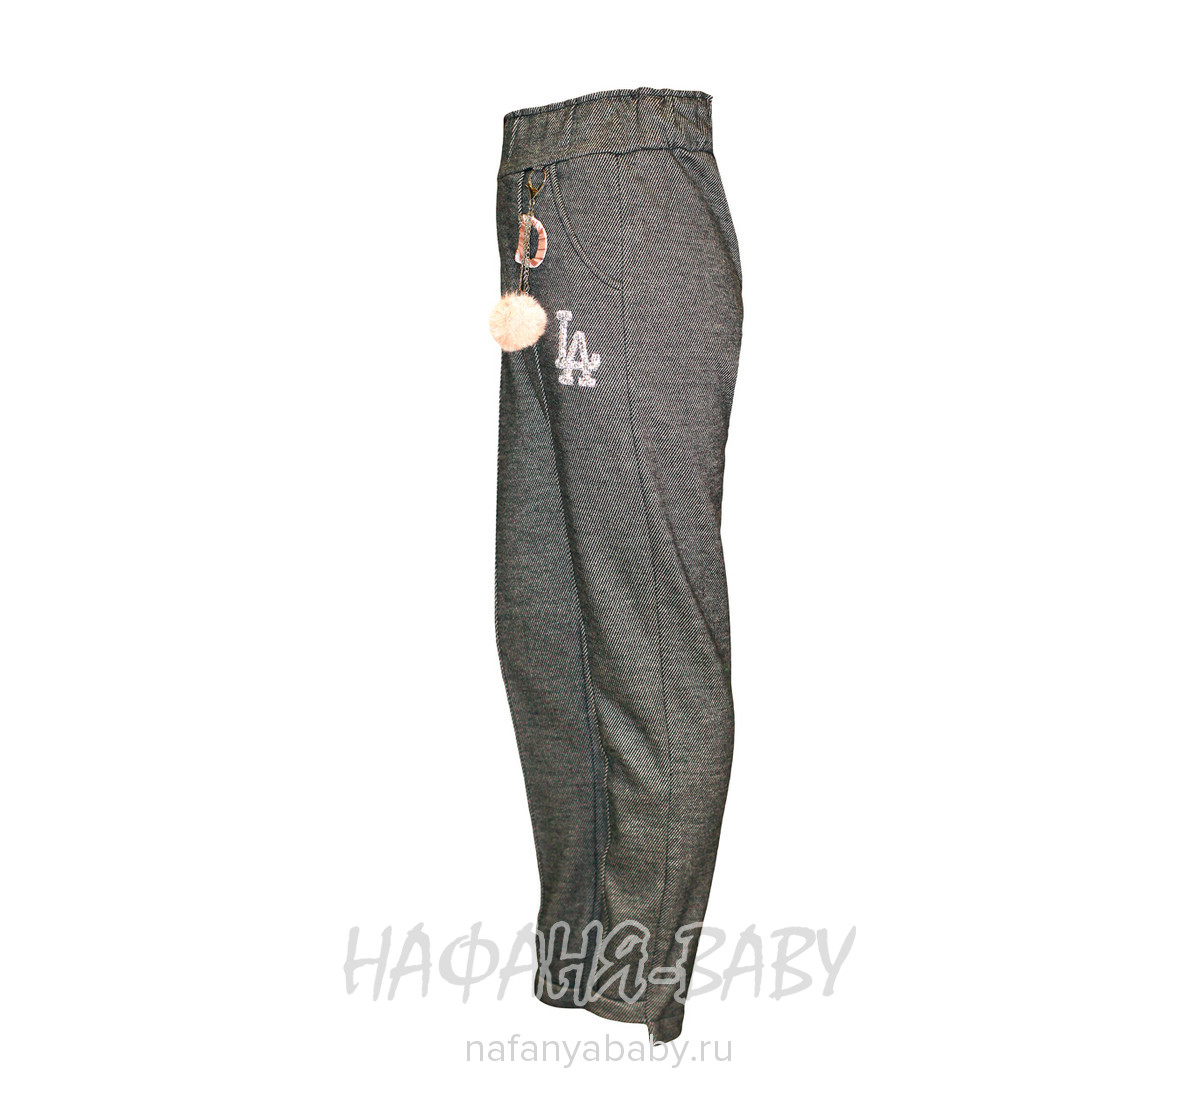 Подростковые утепленные  брюки для девочки Boletong, купить в интернет магазине Нафаня. арт: 8926.